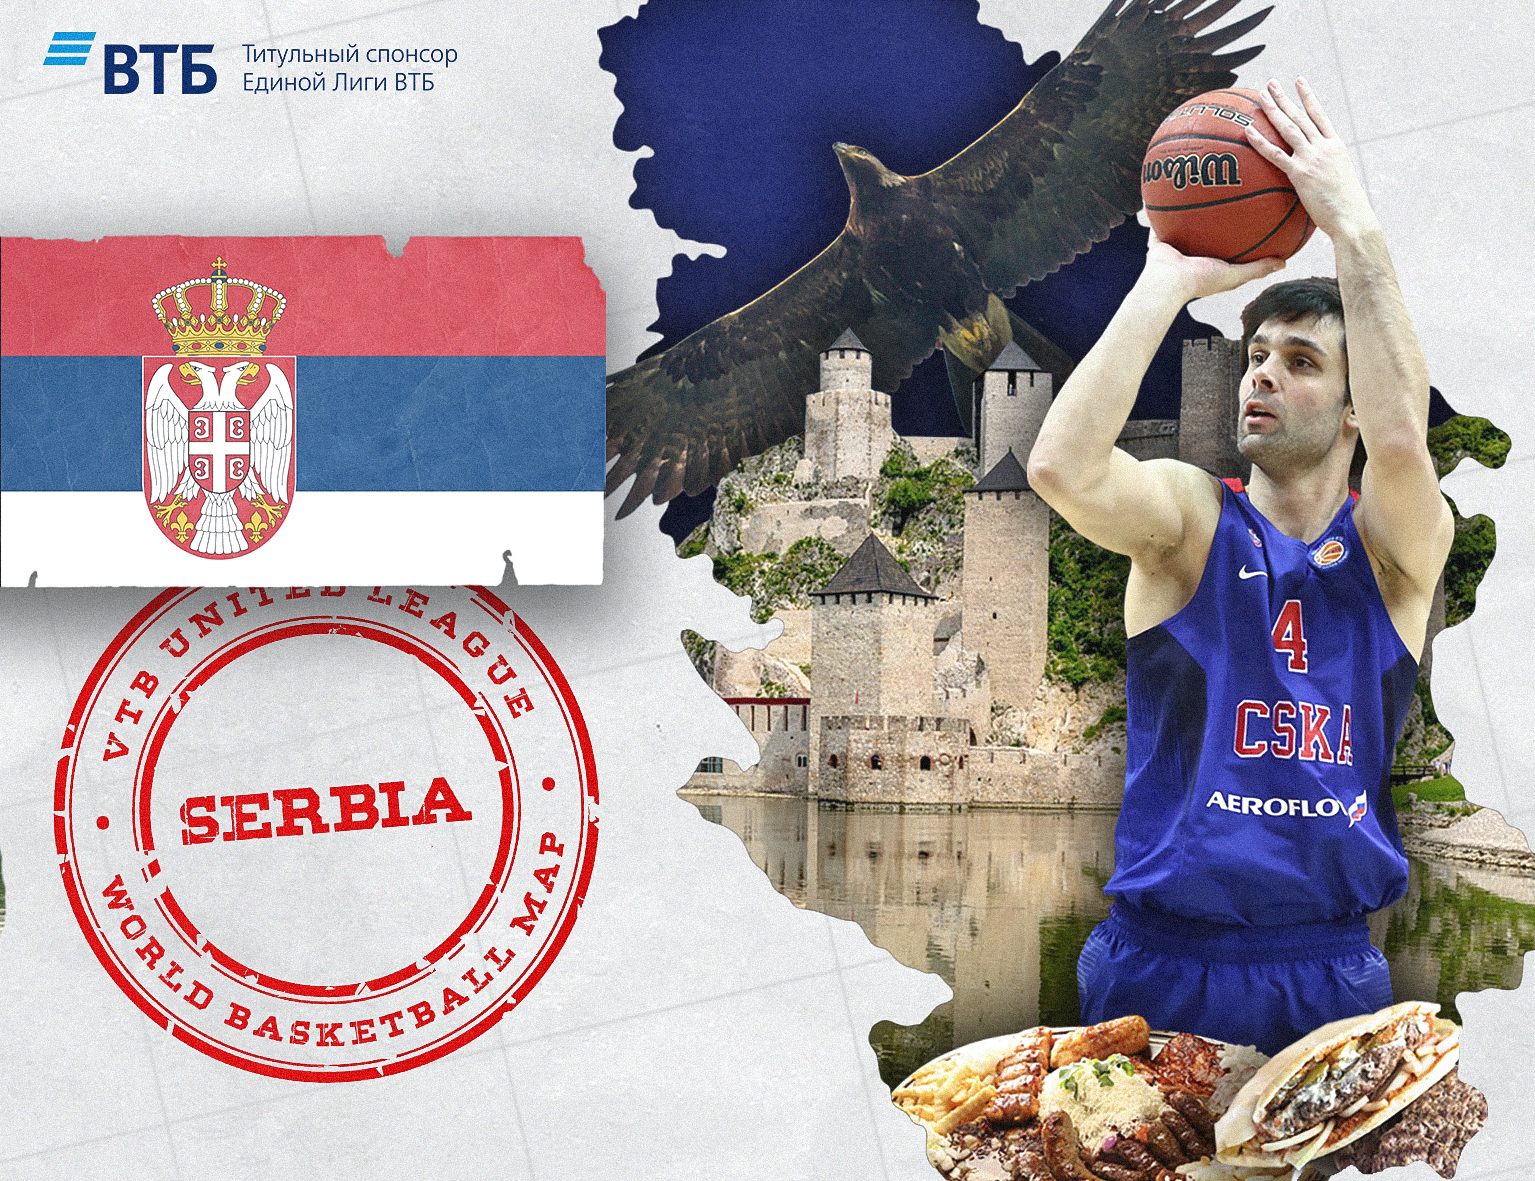 World basketball map: Serbia